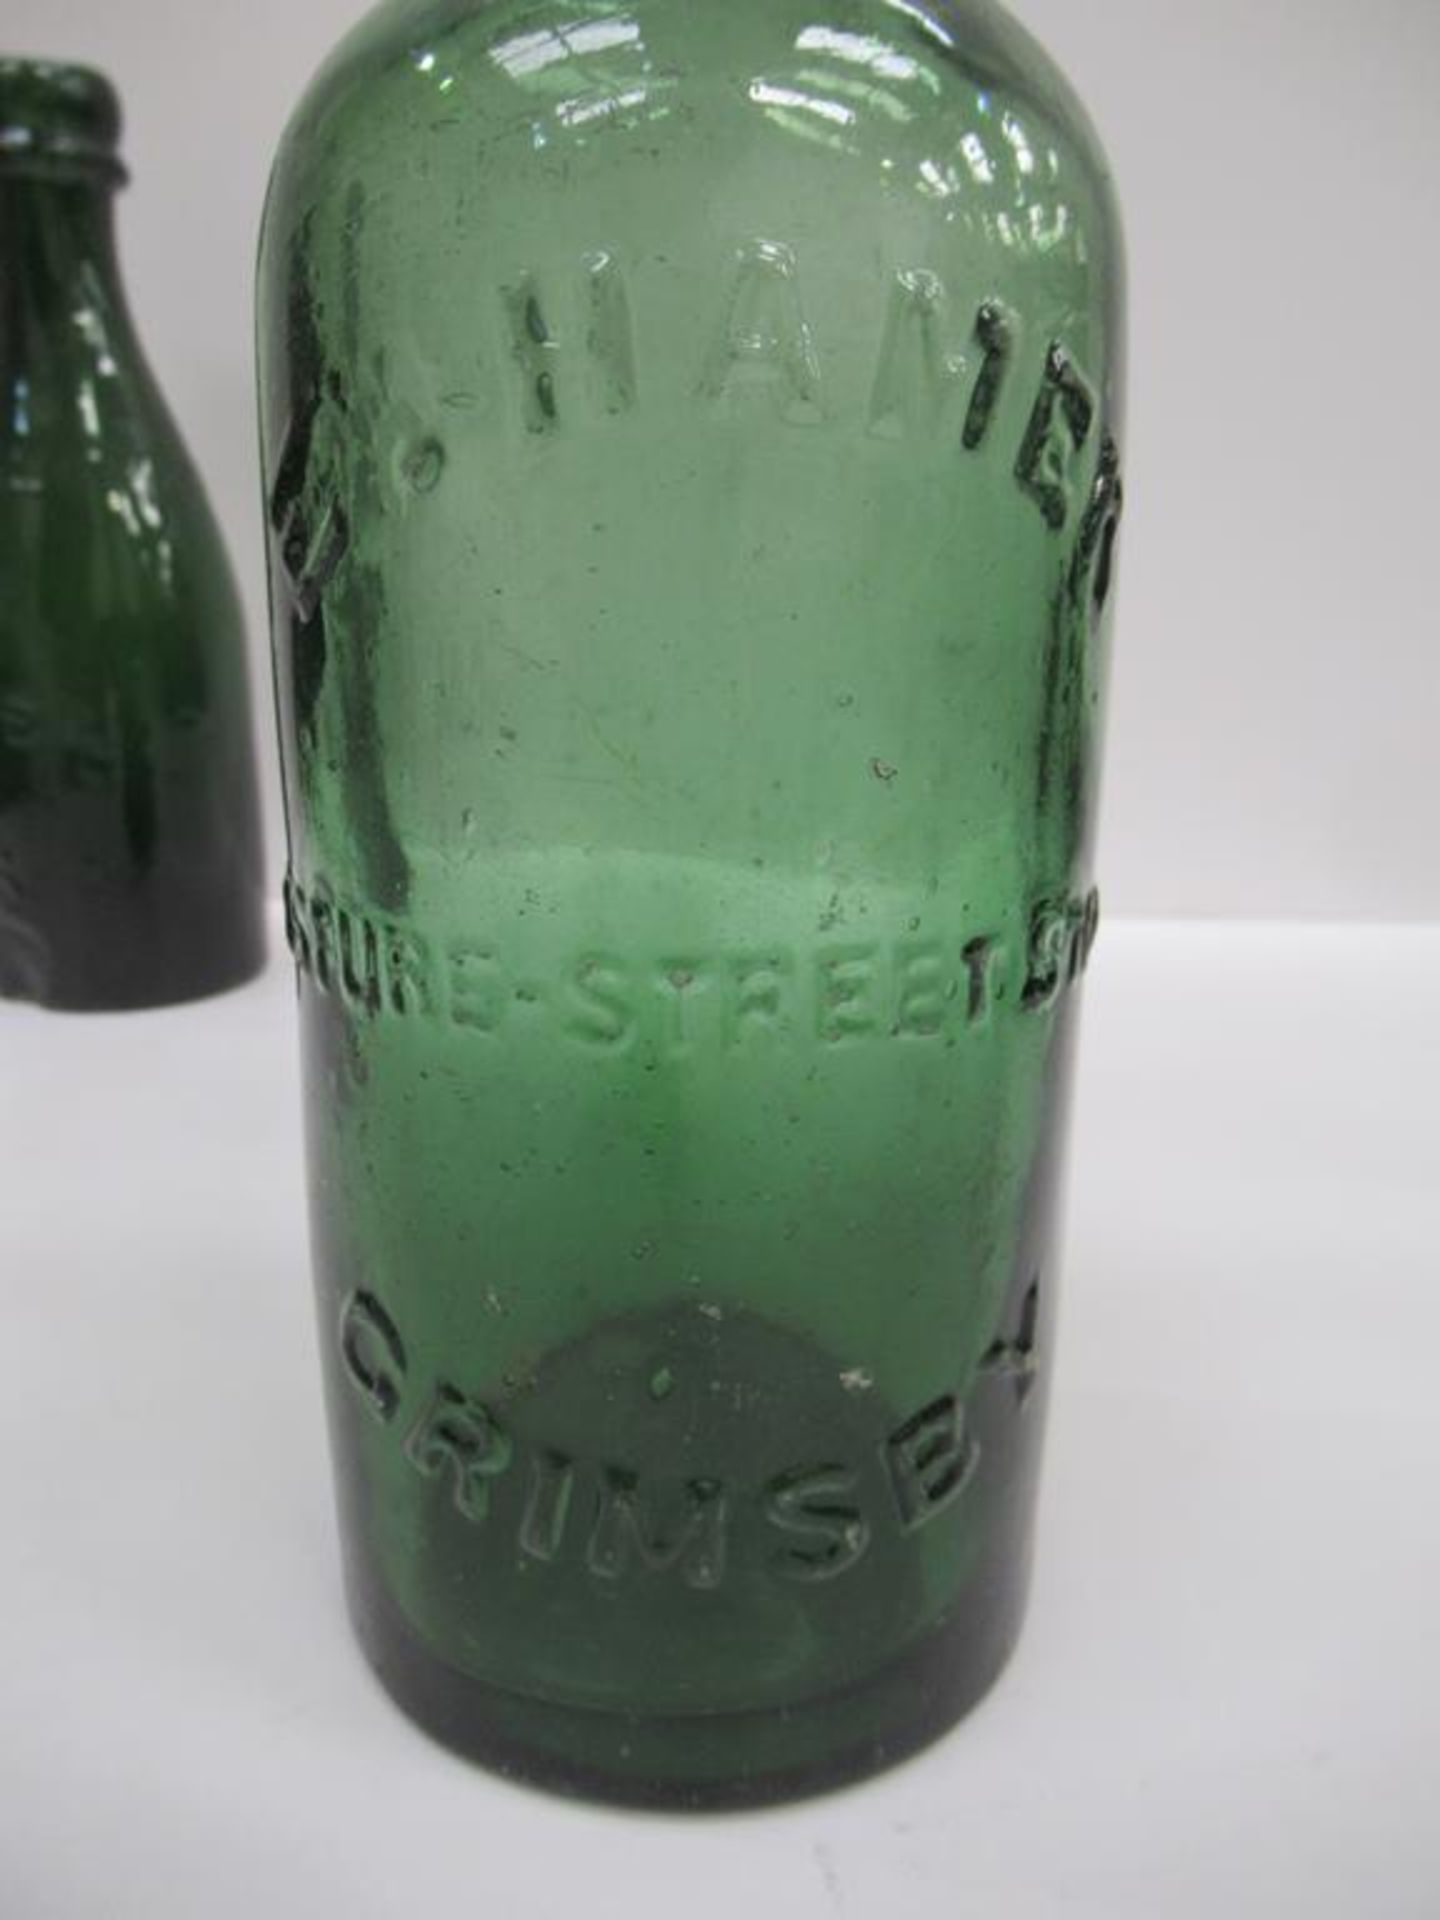 8x Grimsby E.Hamer bottles (4x coloured) - Image 11 of 28